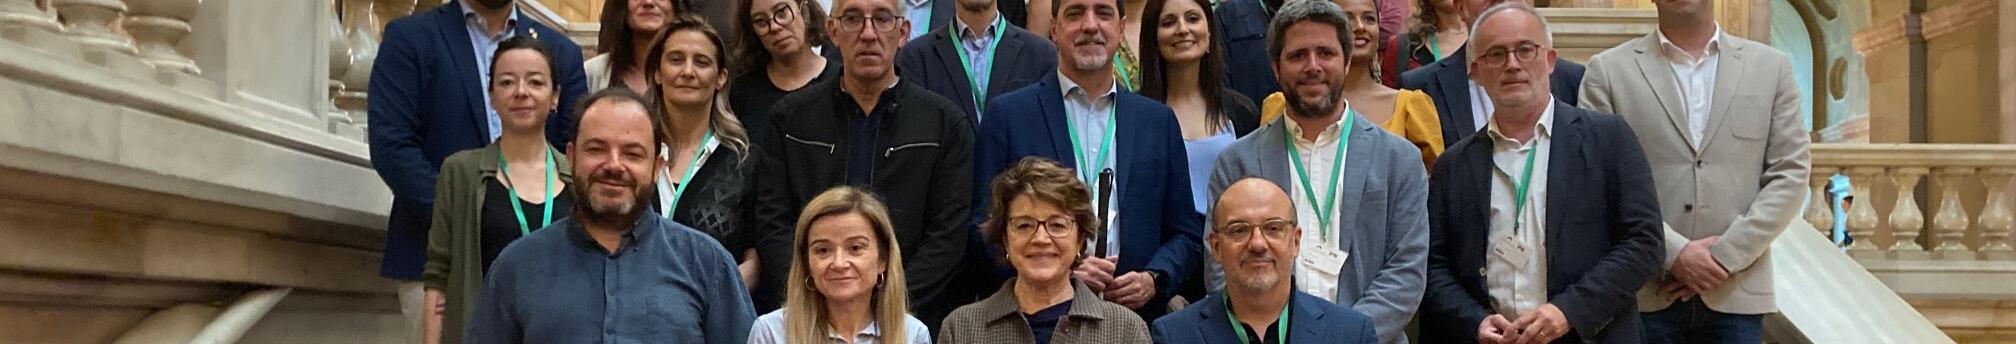 Foto de família a l'escala d'honor del Parlament: Inici tramitació de la Llei del Tercer Sector Social de Catalunya